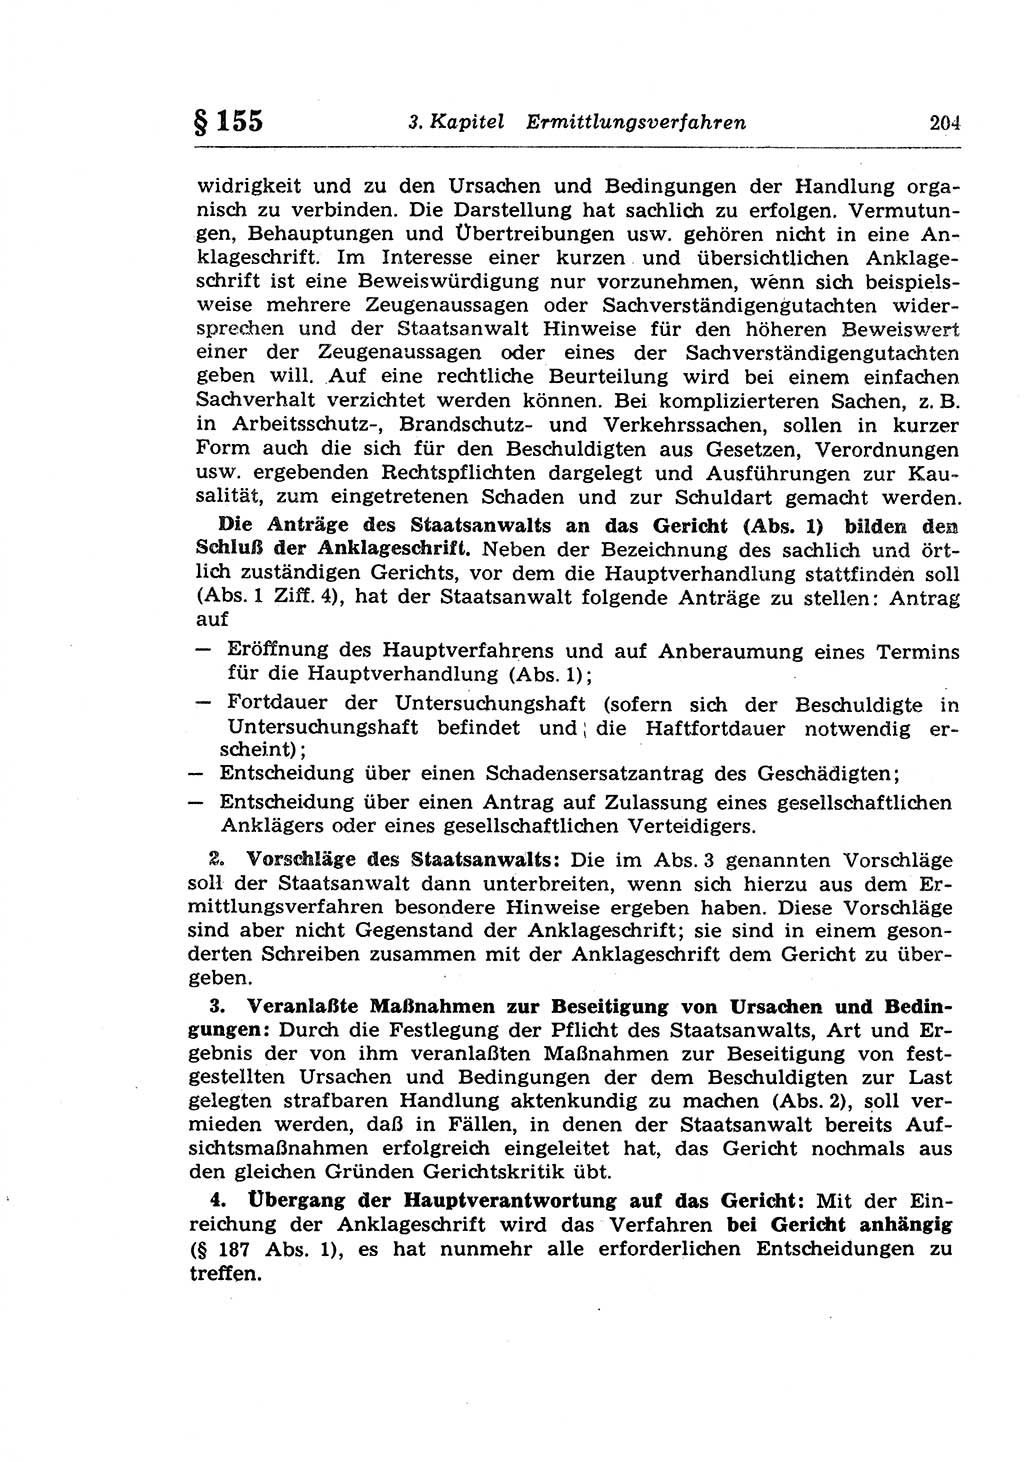 Strafprozeßrecht der DDR (Deutsche Demokratische Republik), Lehrkommentar zur Strafprozeßordnung (StPO) 1968, Seite 204 (Strafprozeßr. DDR Lehrkomm. StPO 19688, S. 204)